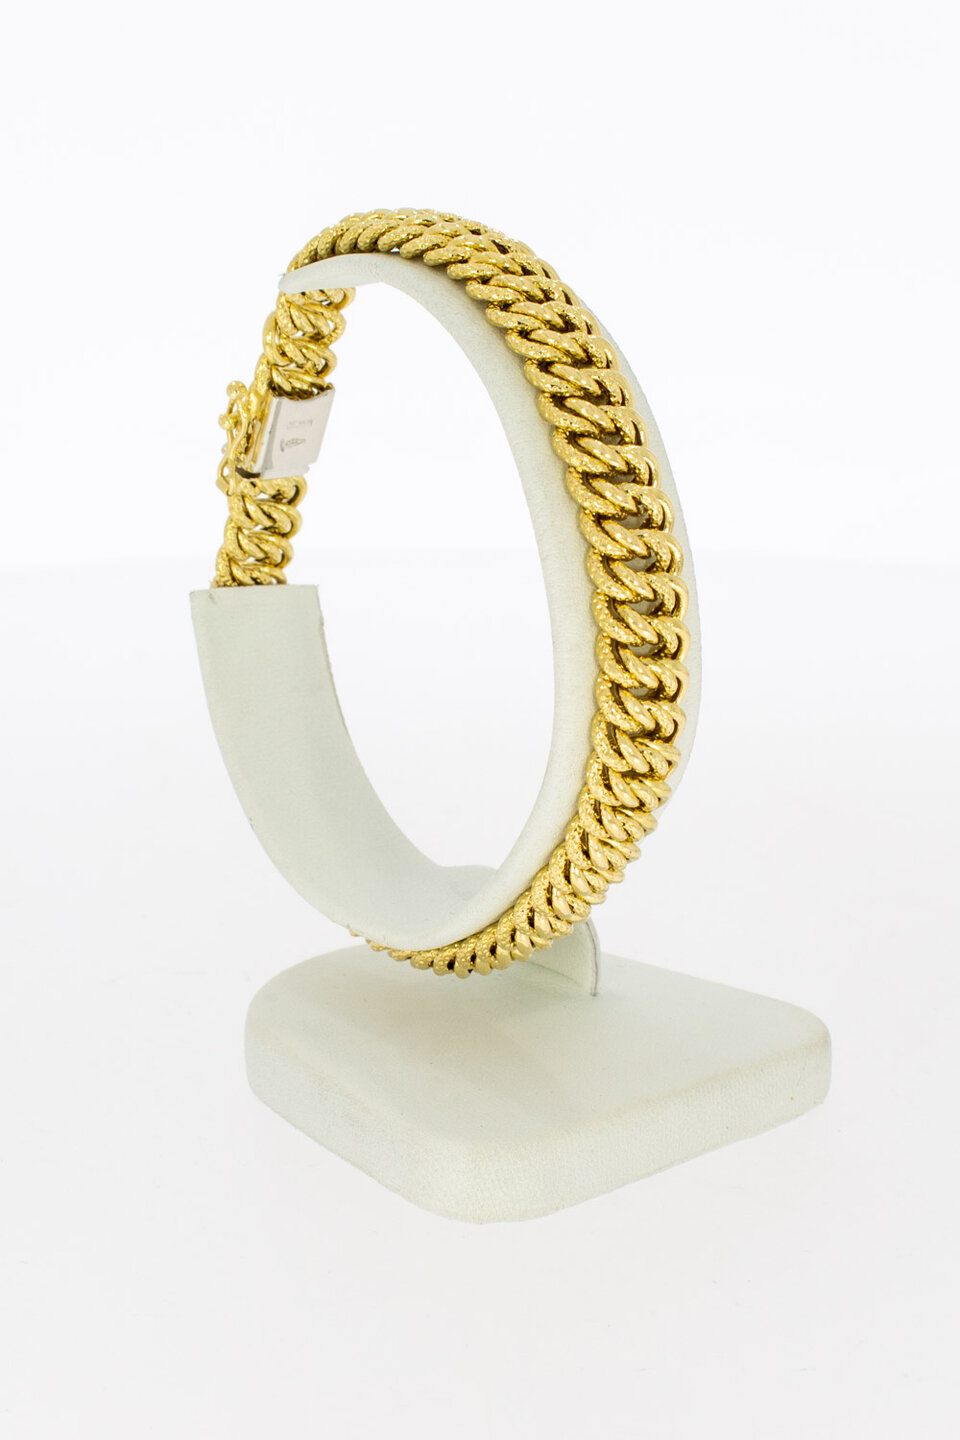 Geflochtenes Armband 18 Karat Gold - 19,5 cm